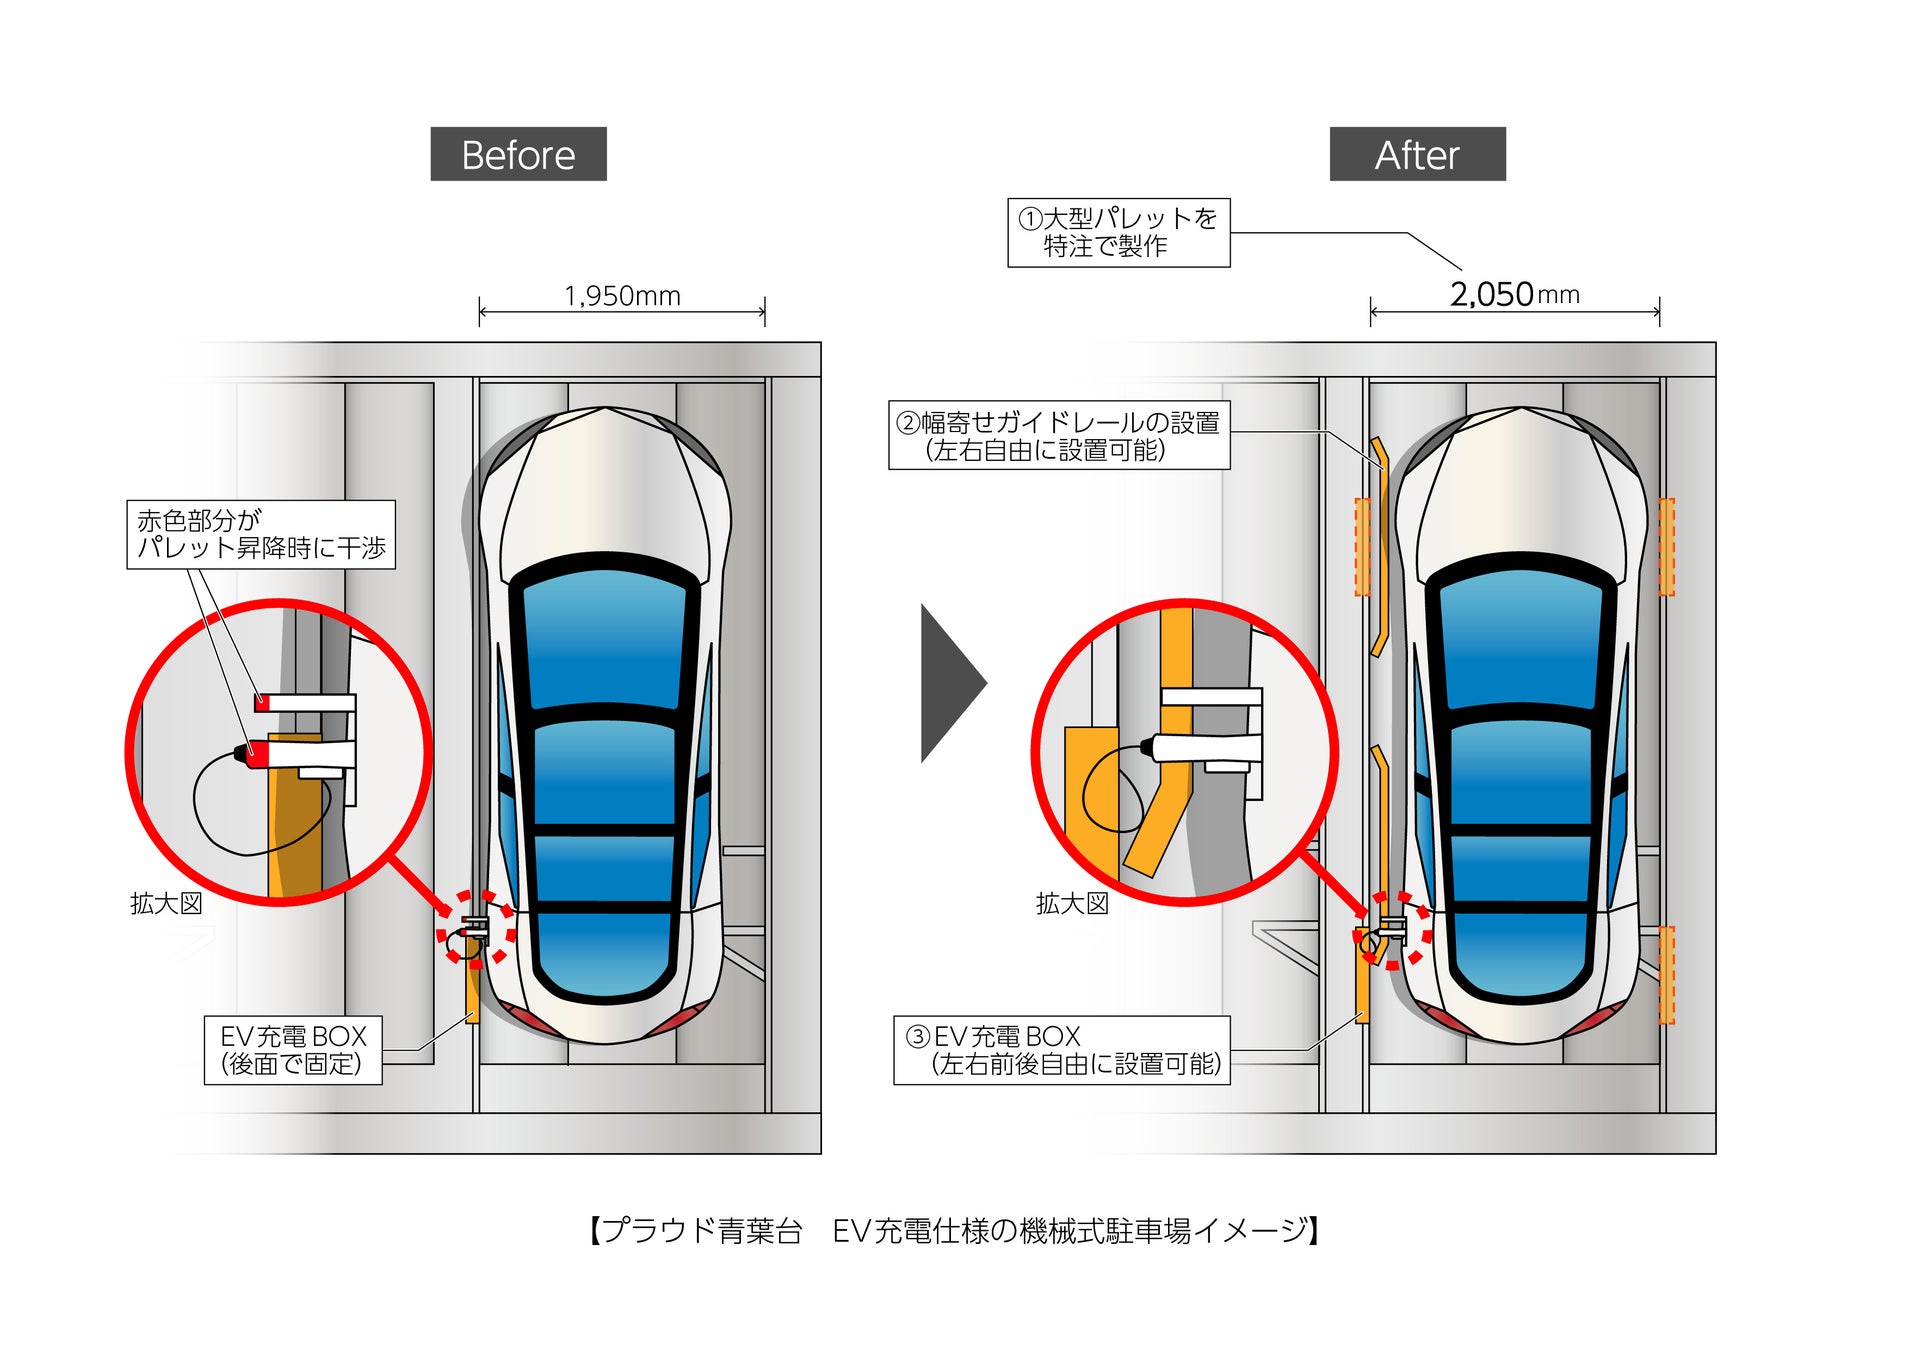 分譲マンションのEV充電設備、東京都の2025年より設置義務化に先行対応、プラウドシリーズ全物件で、「EV充電設備」設置率原則3割にのサブ画像3_プラウド青葉台 EV充電仕様の機械式駐車場イメージ